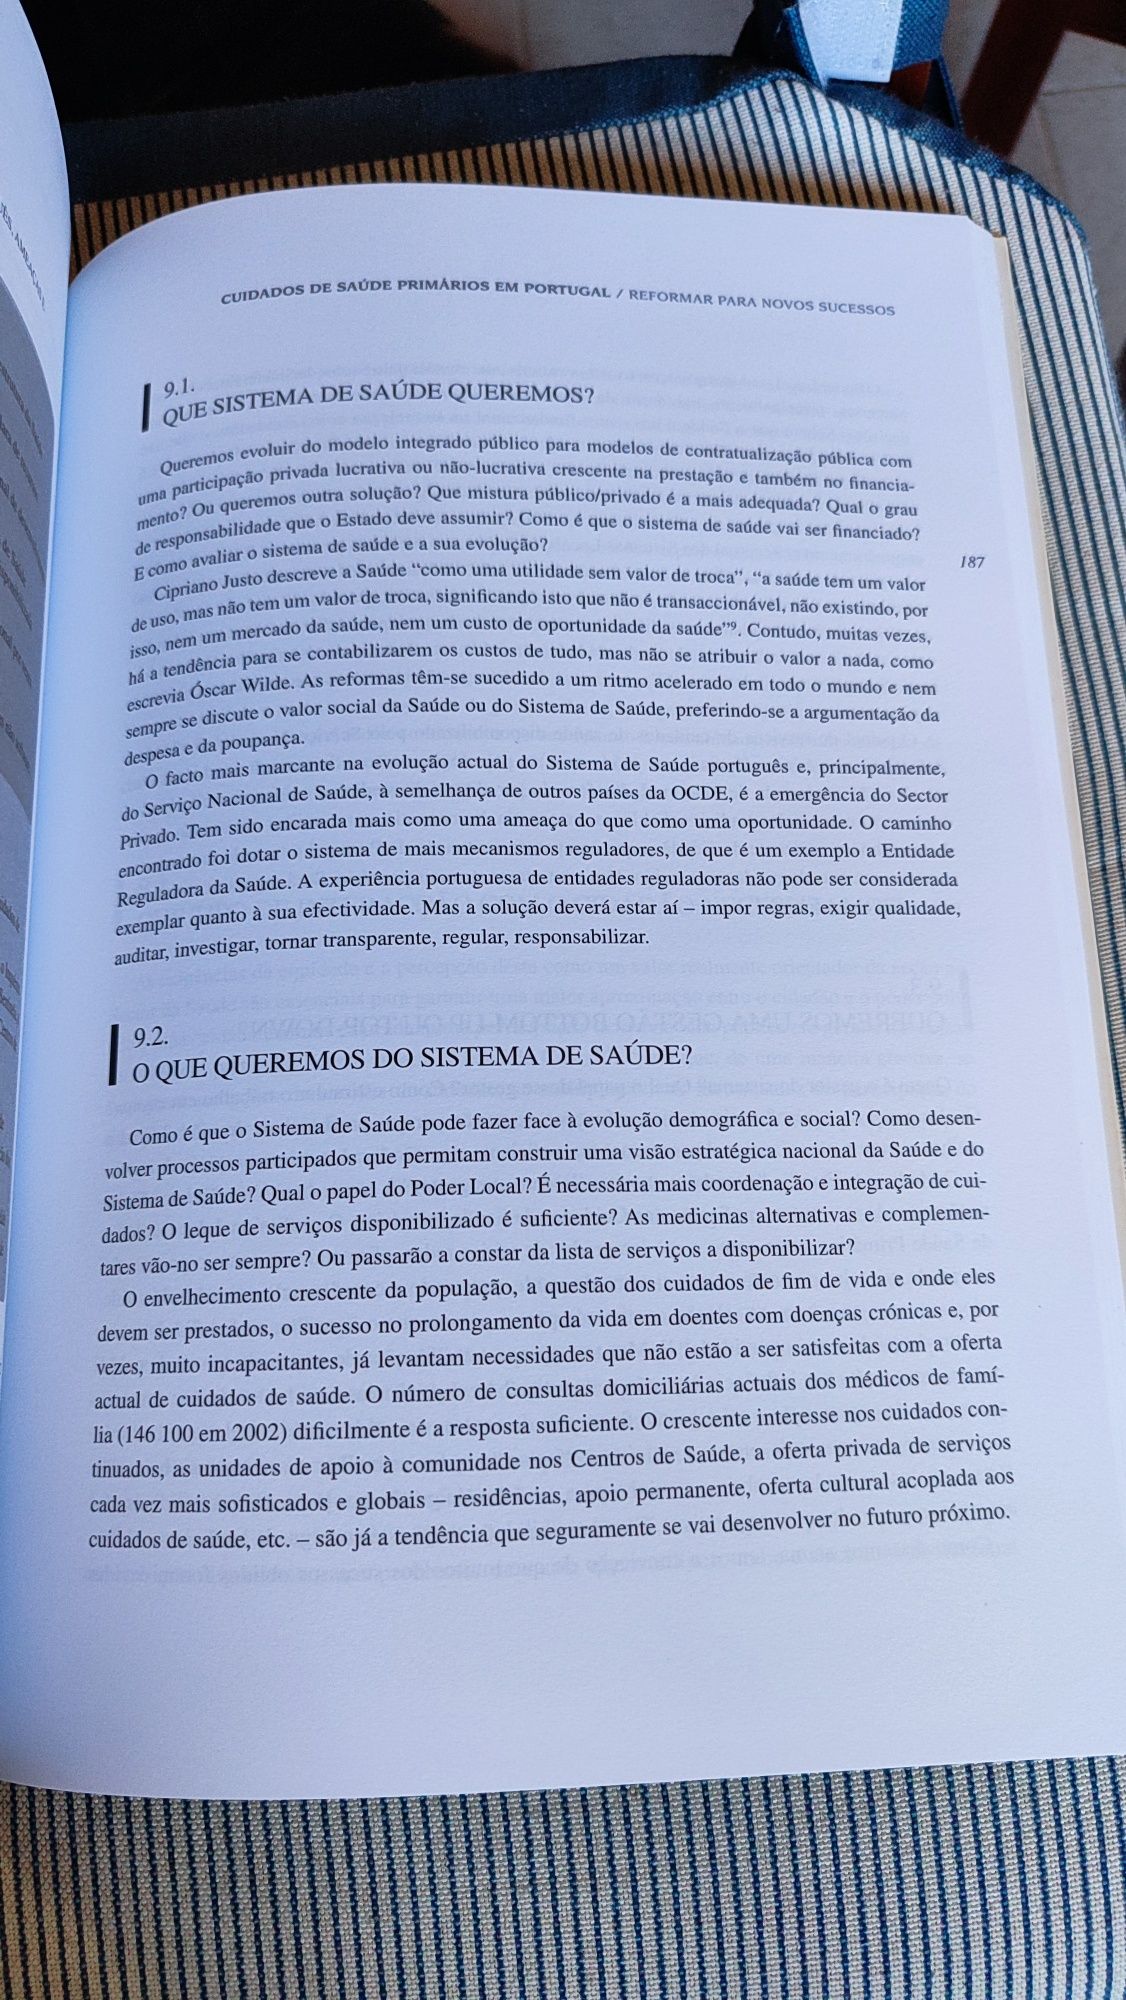 Livro "Cuidados de Saúde Primários em Portugal"